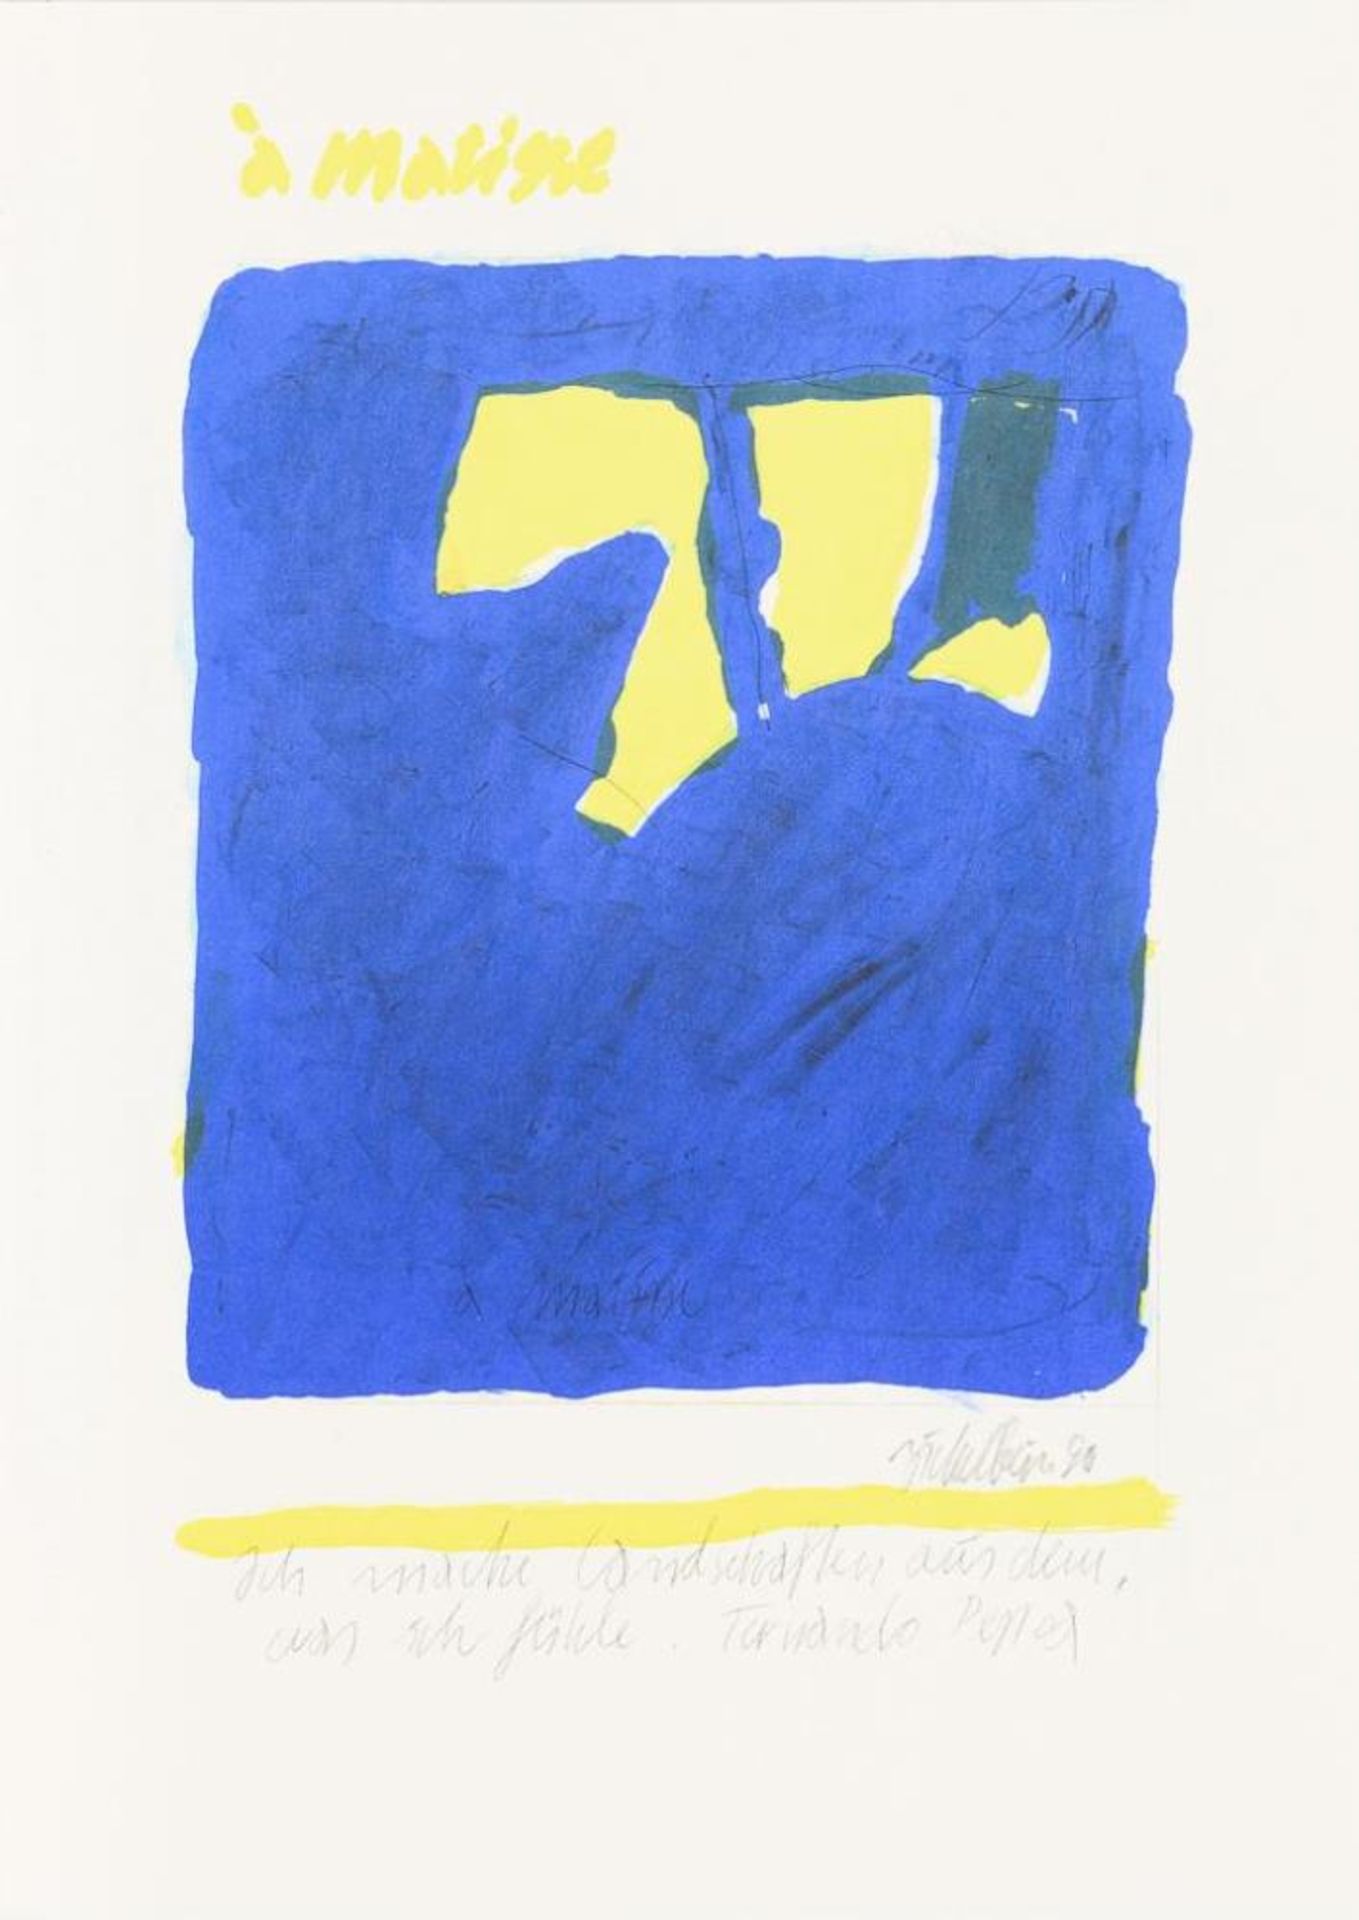 ZICKELBEIN, Horst (*1926 Frankfurt/Oder). "Hommage á ... Matisse, Monet, Rodin, Poliakoff".